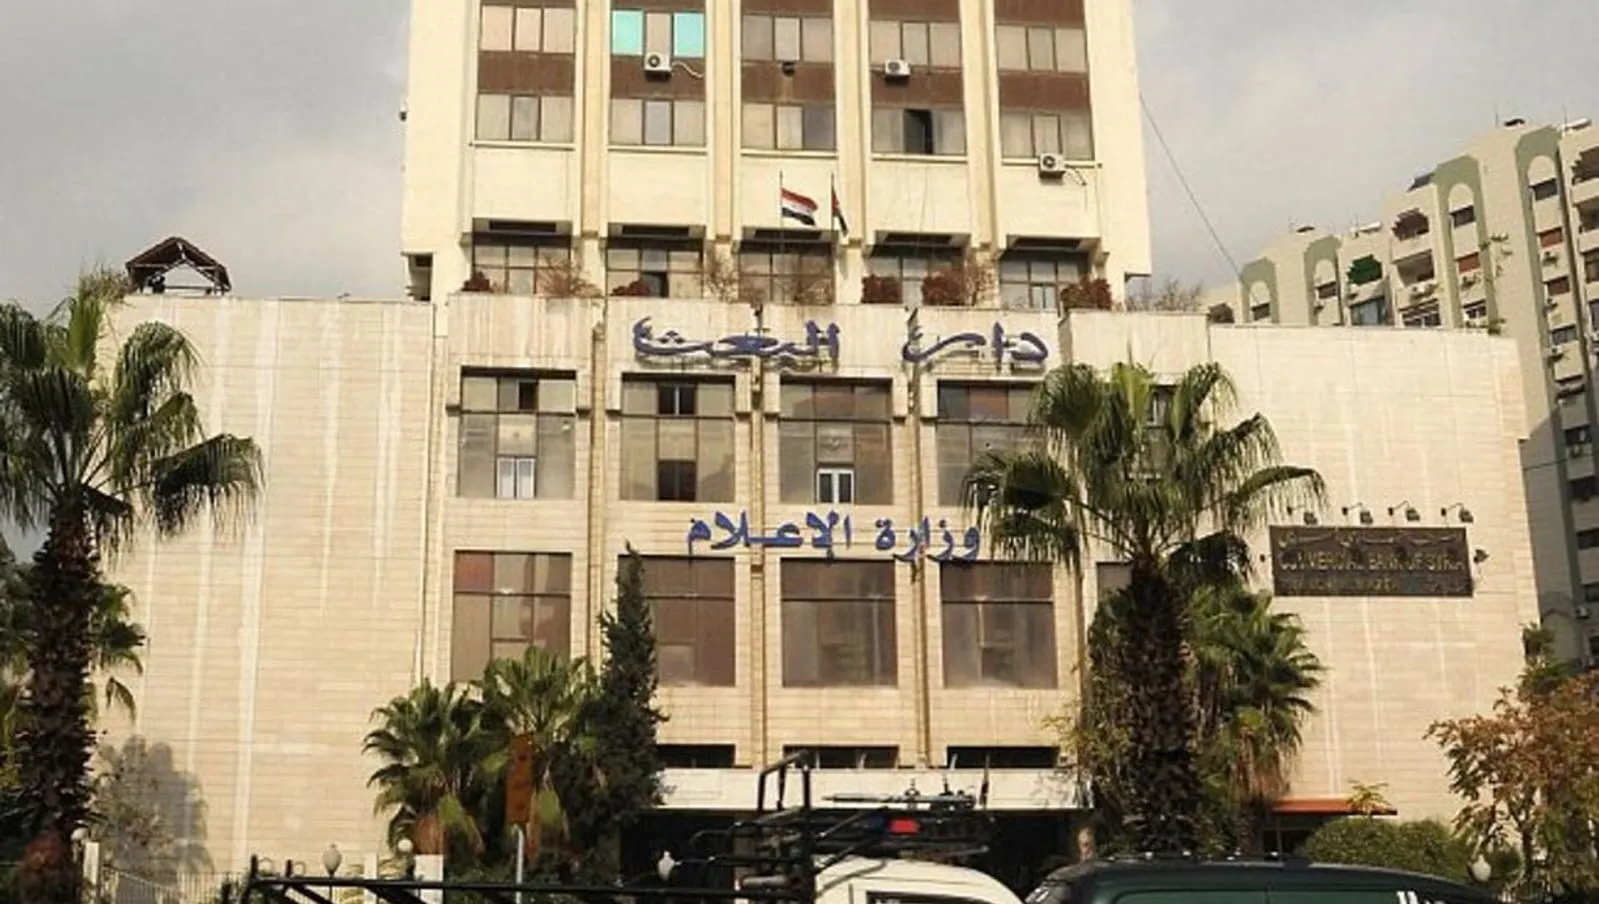 غامض ومثير للجدل.. "بشار" يحدث قانون وزارة إعلام جديدة بذريعة "مواكبة التطورات"